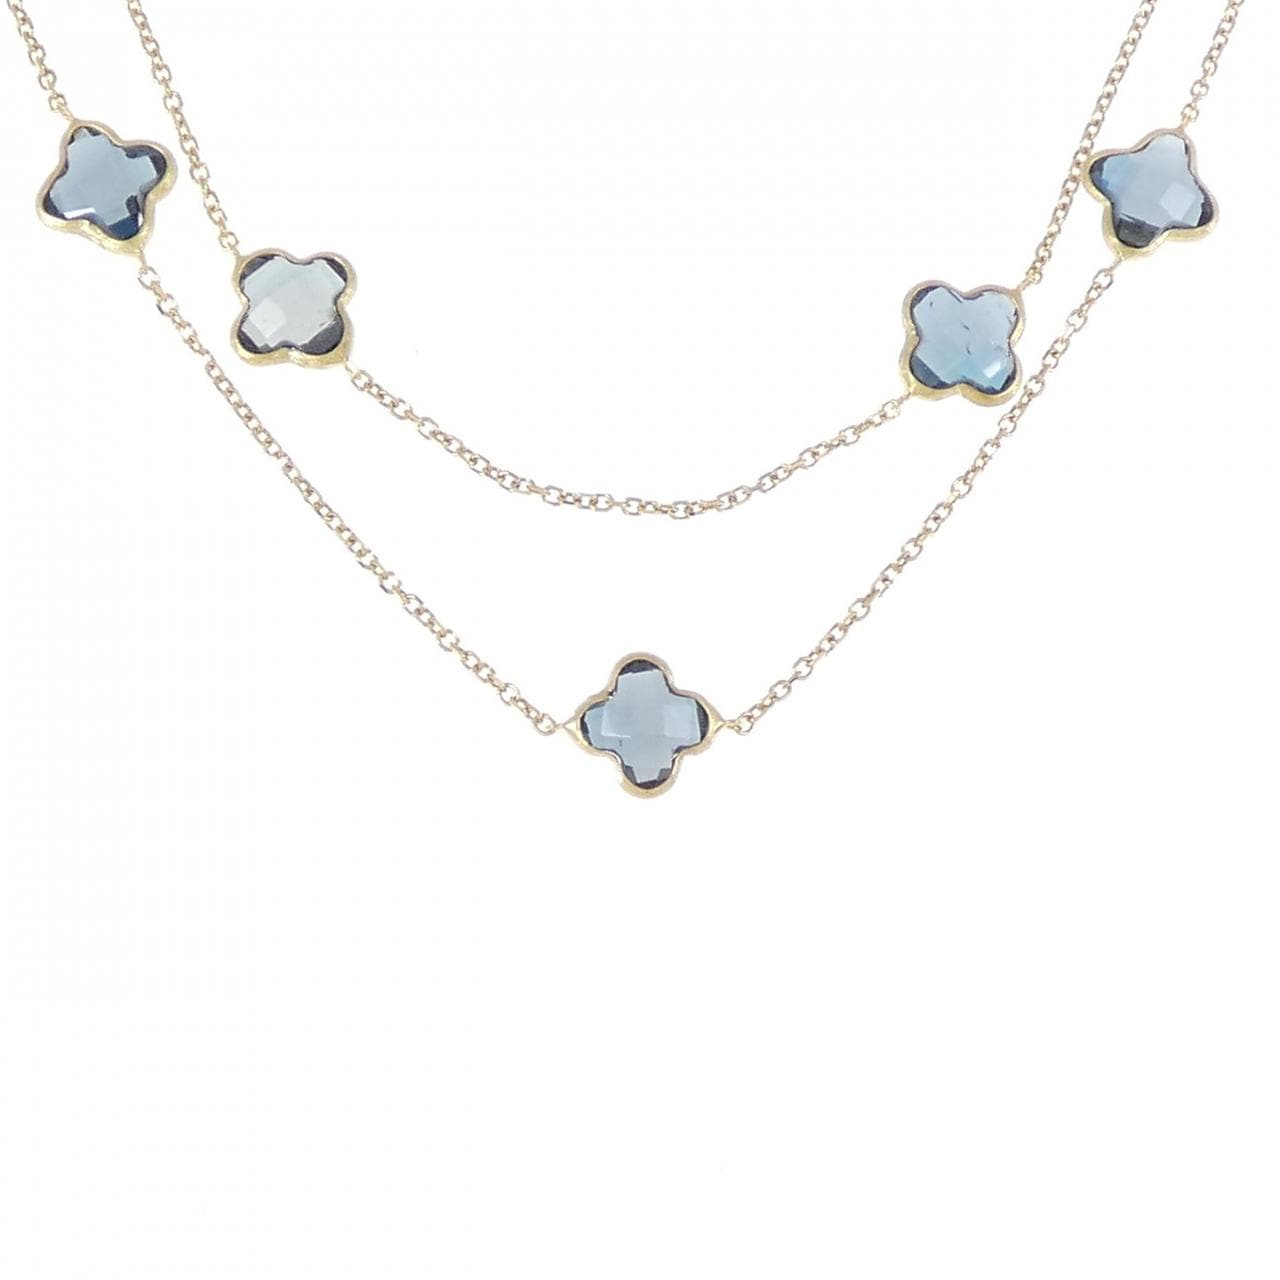 750YG blue Topaz necklace